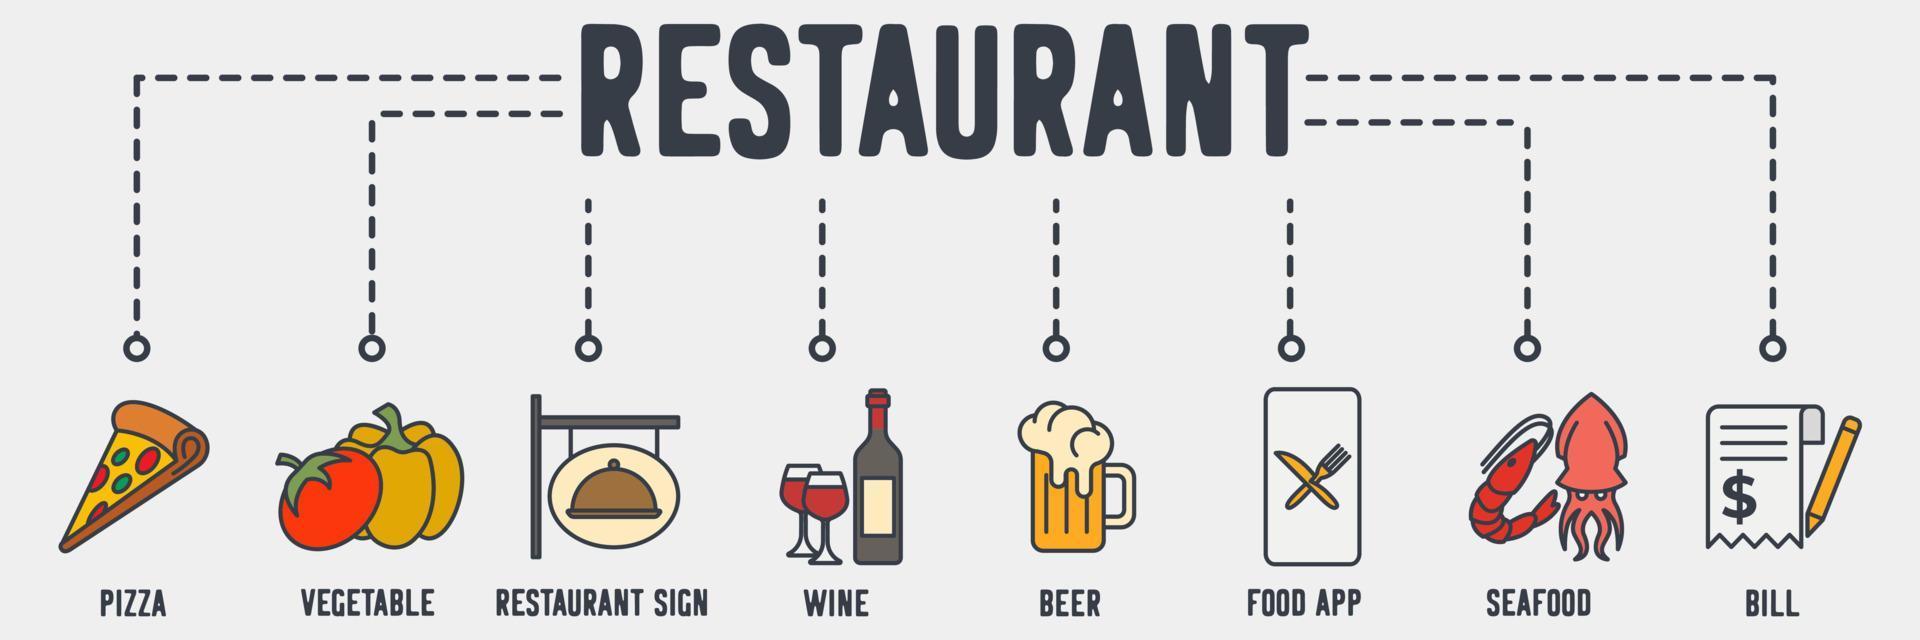 icône web de bannière de restaurant. pizza, légume, enseigne de restaurant, vin, bière, application alimentaire, fruits de mer, concept d'illustration vectorielle de facture. vecteur